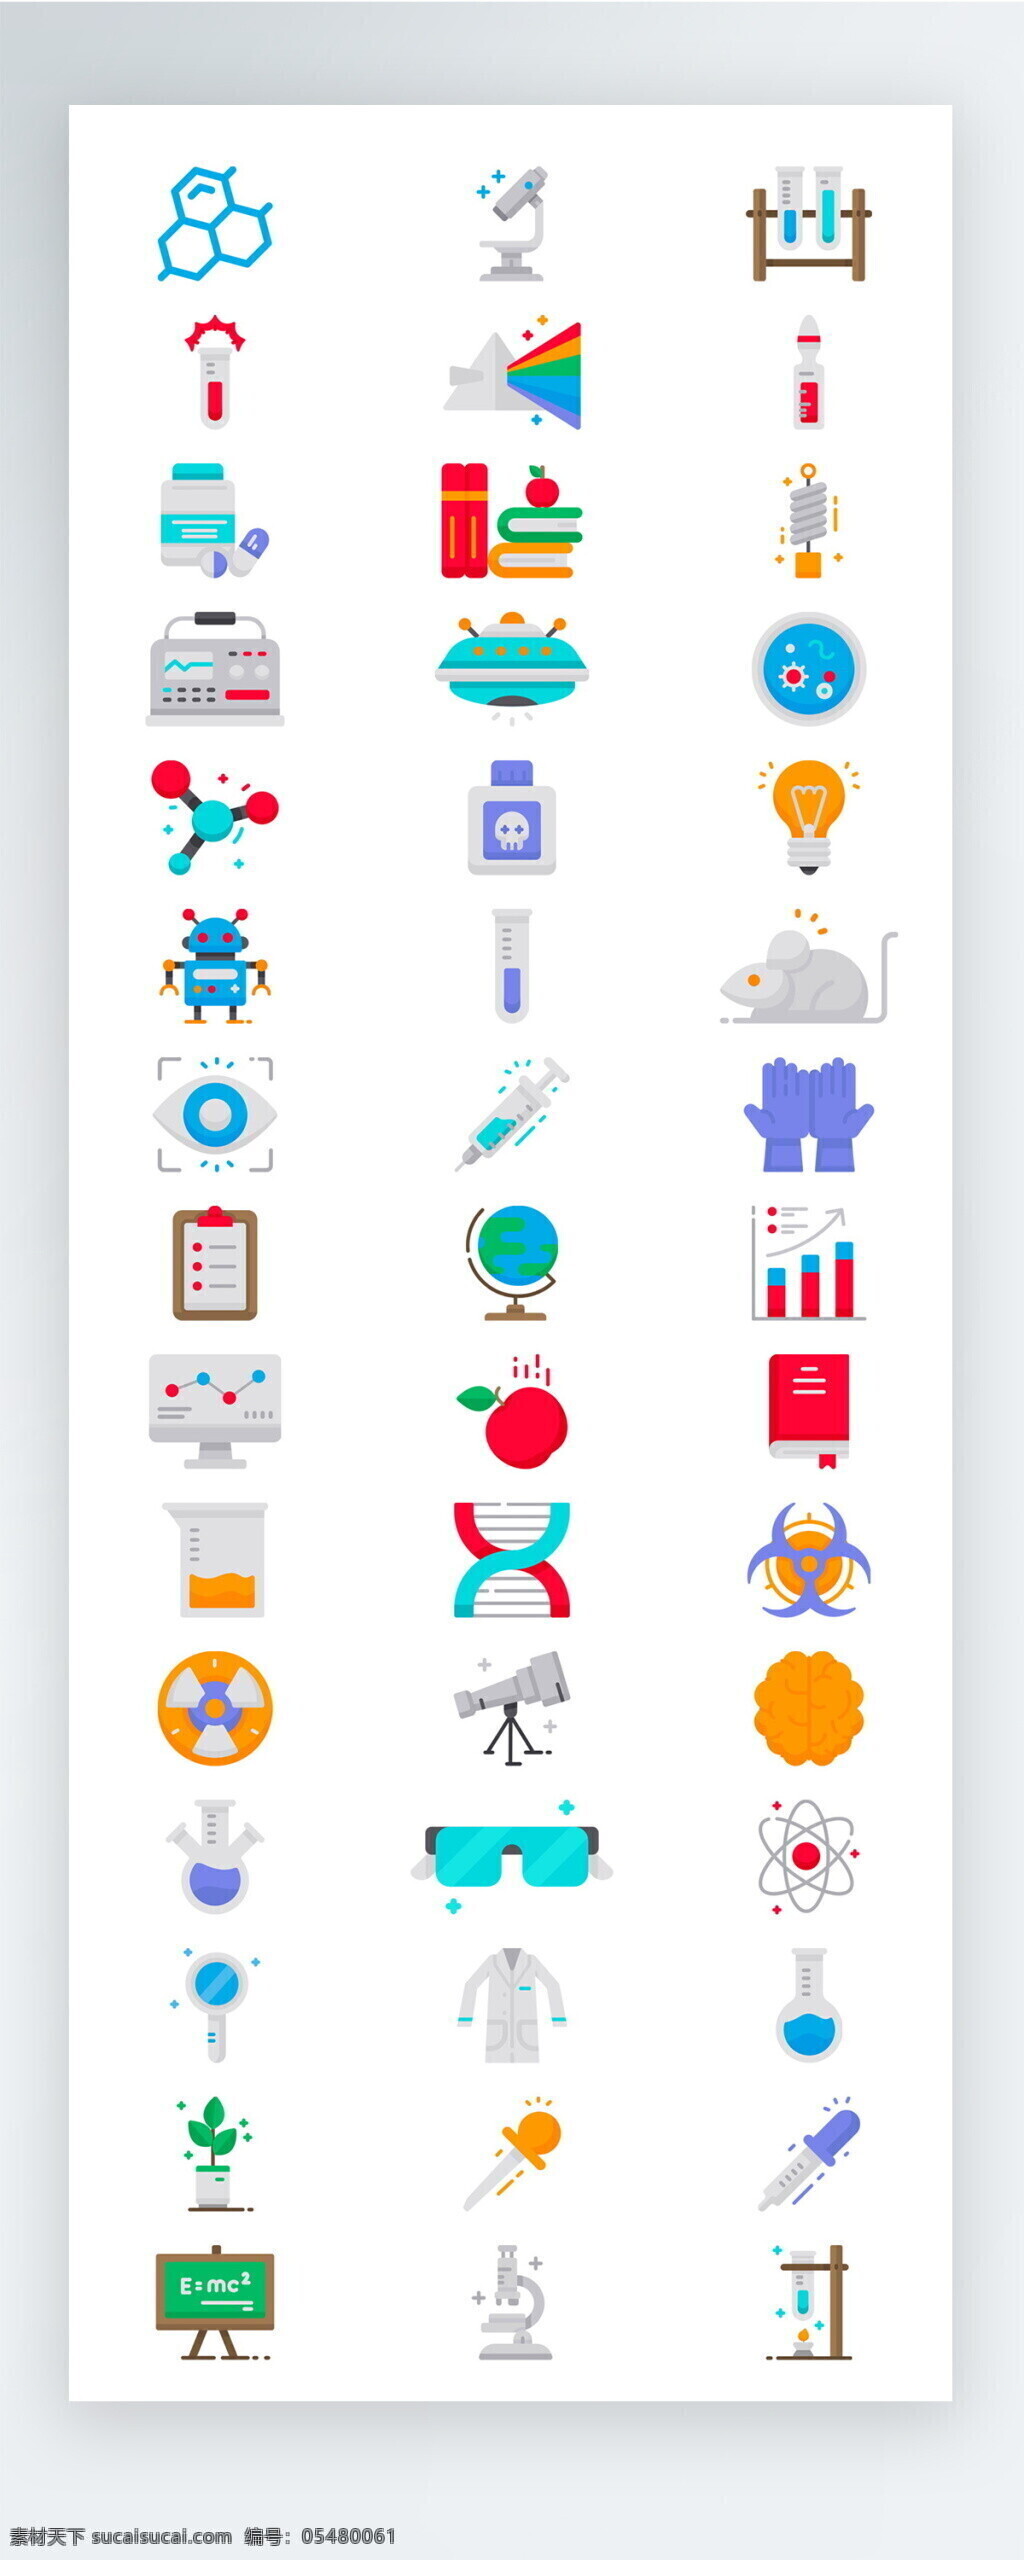 彩色 教育 实验 学习 图标 矢量 icon icon图标 ui 手机 拟物 工具 医疗 护理 学校